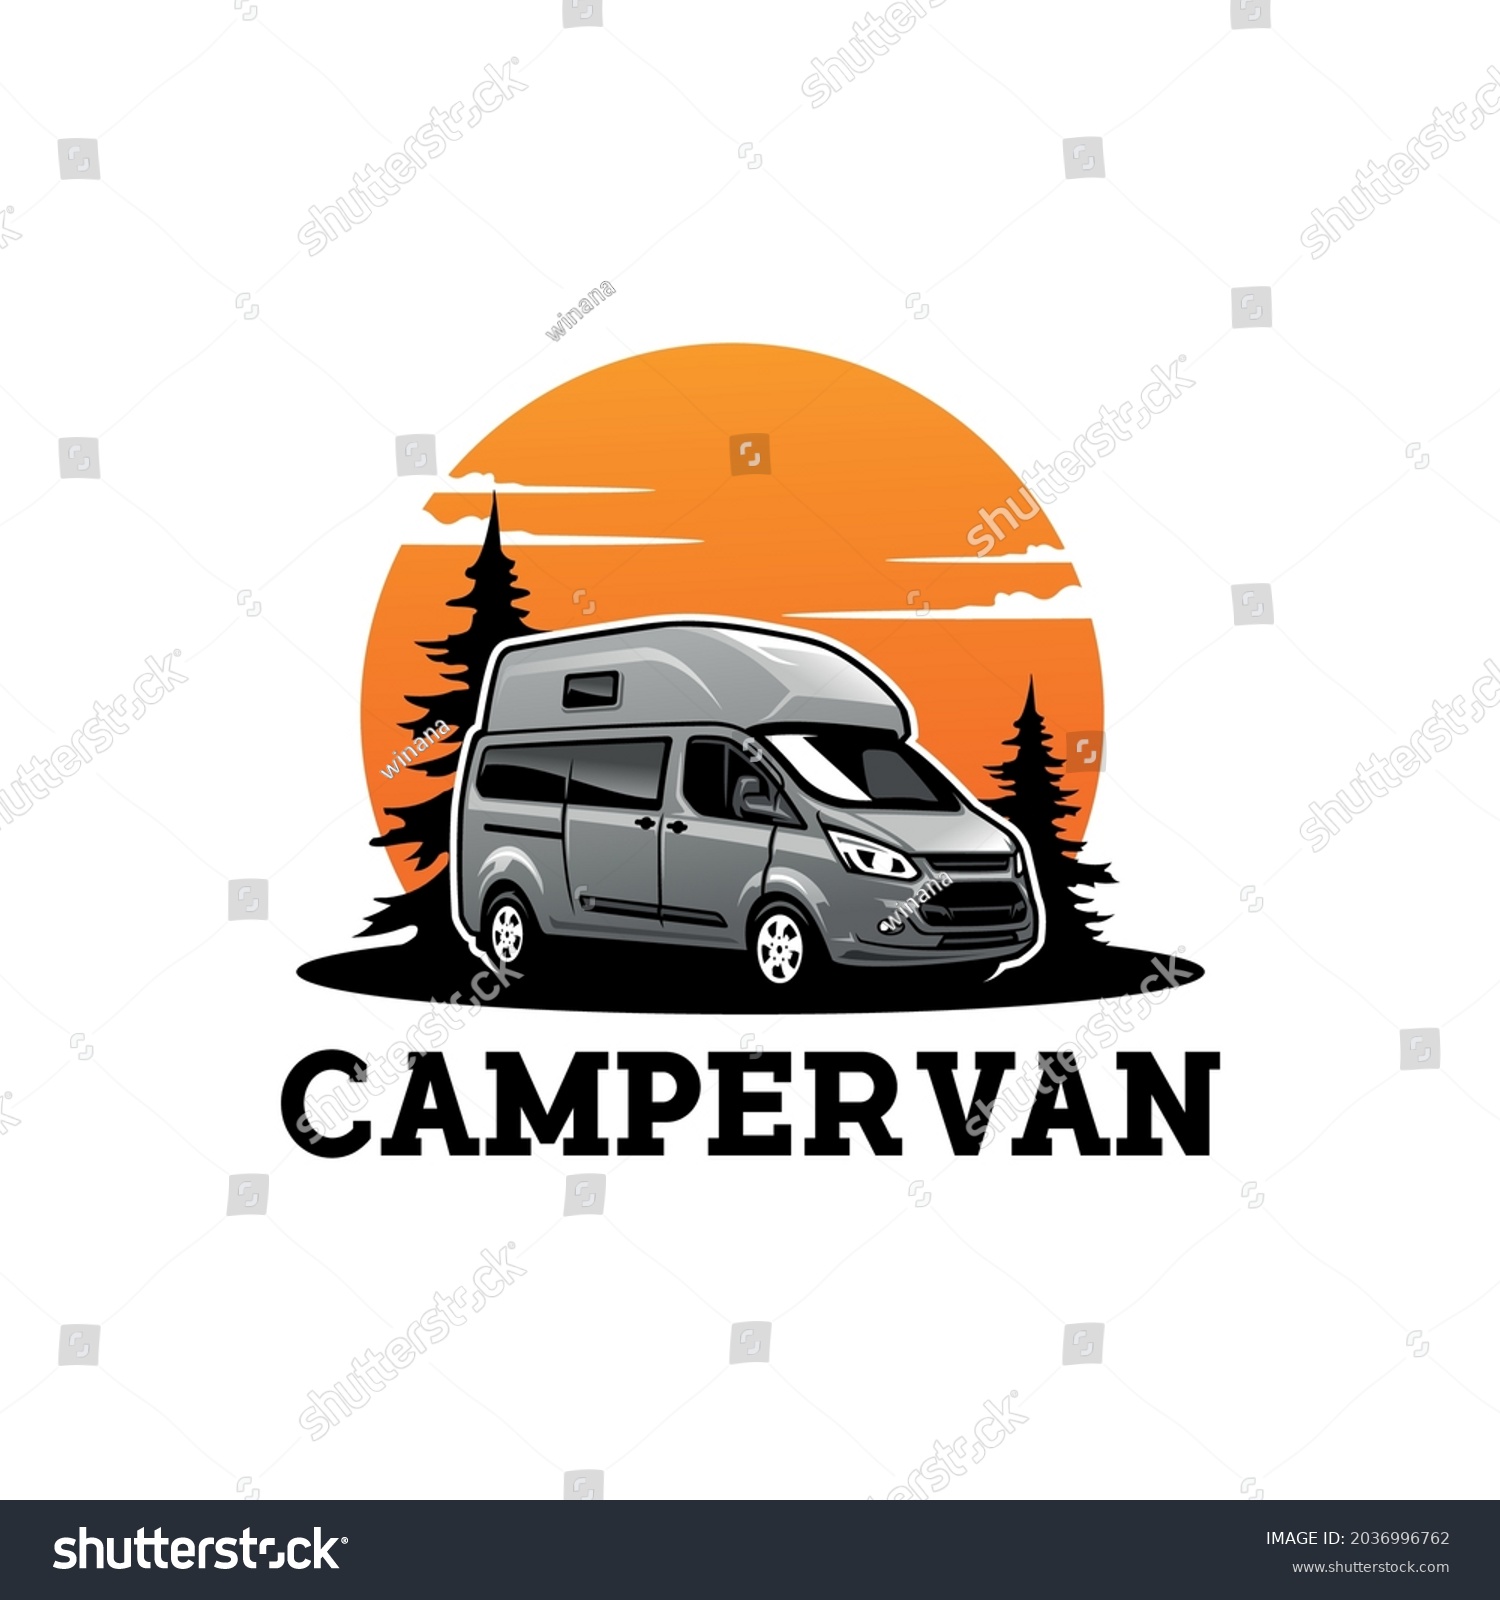 40,287 Caravan camping Images, Stock Photos & Vectors | Shutterstock